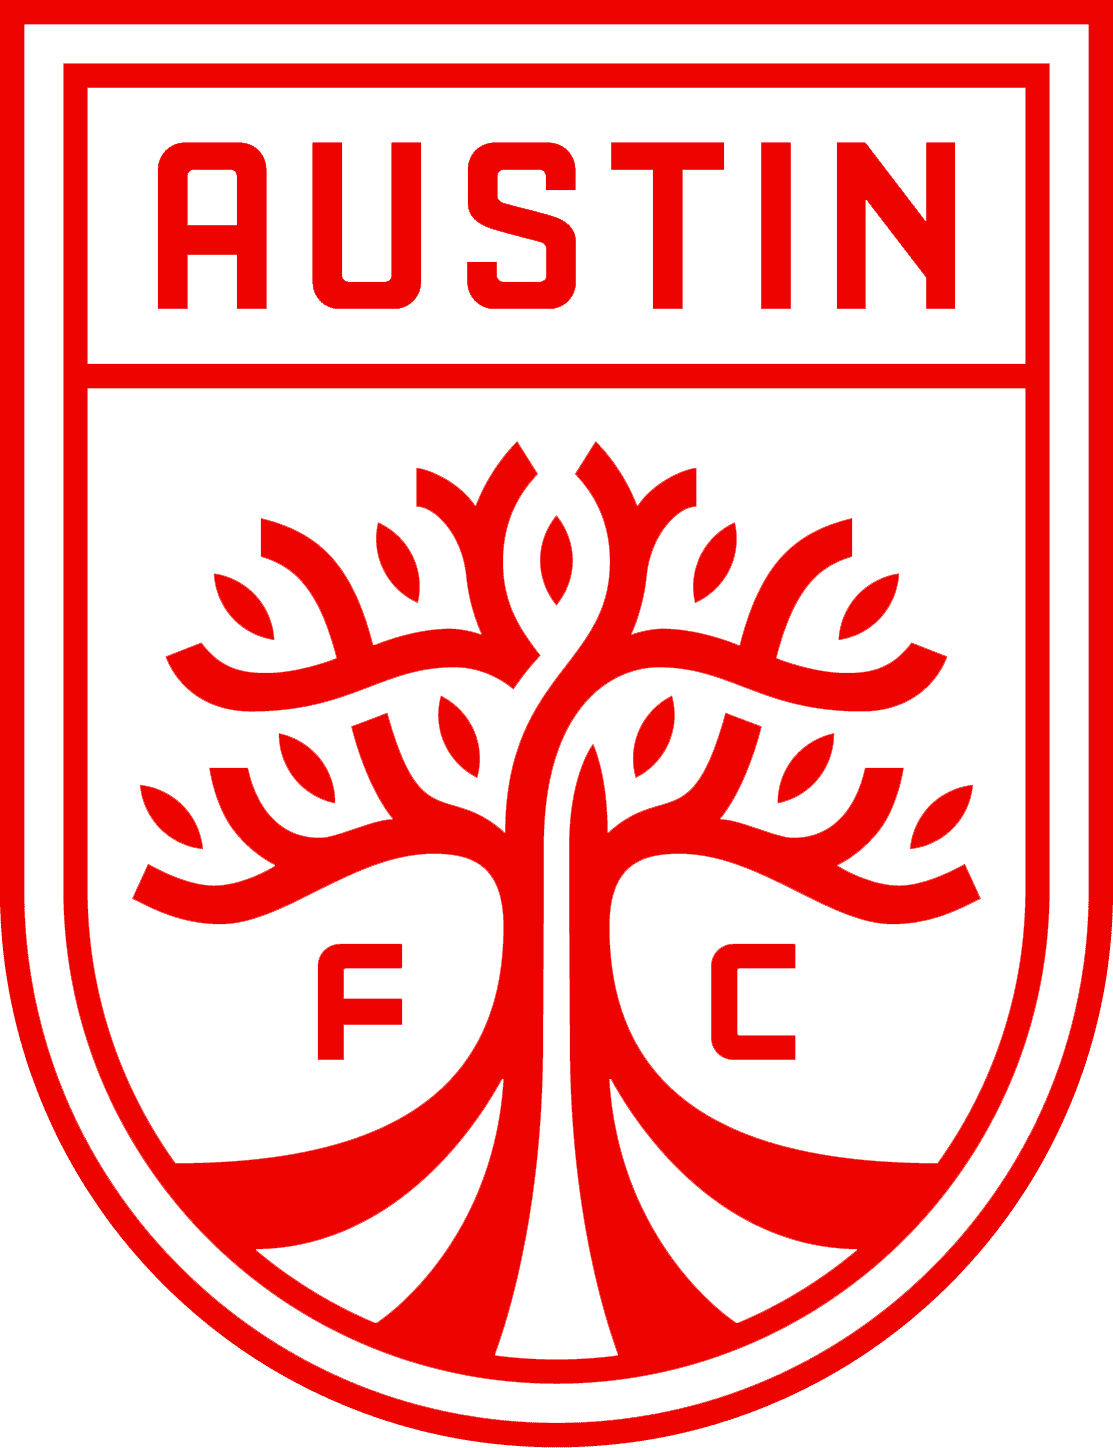 Austin FC Soccer